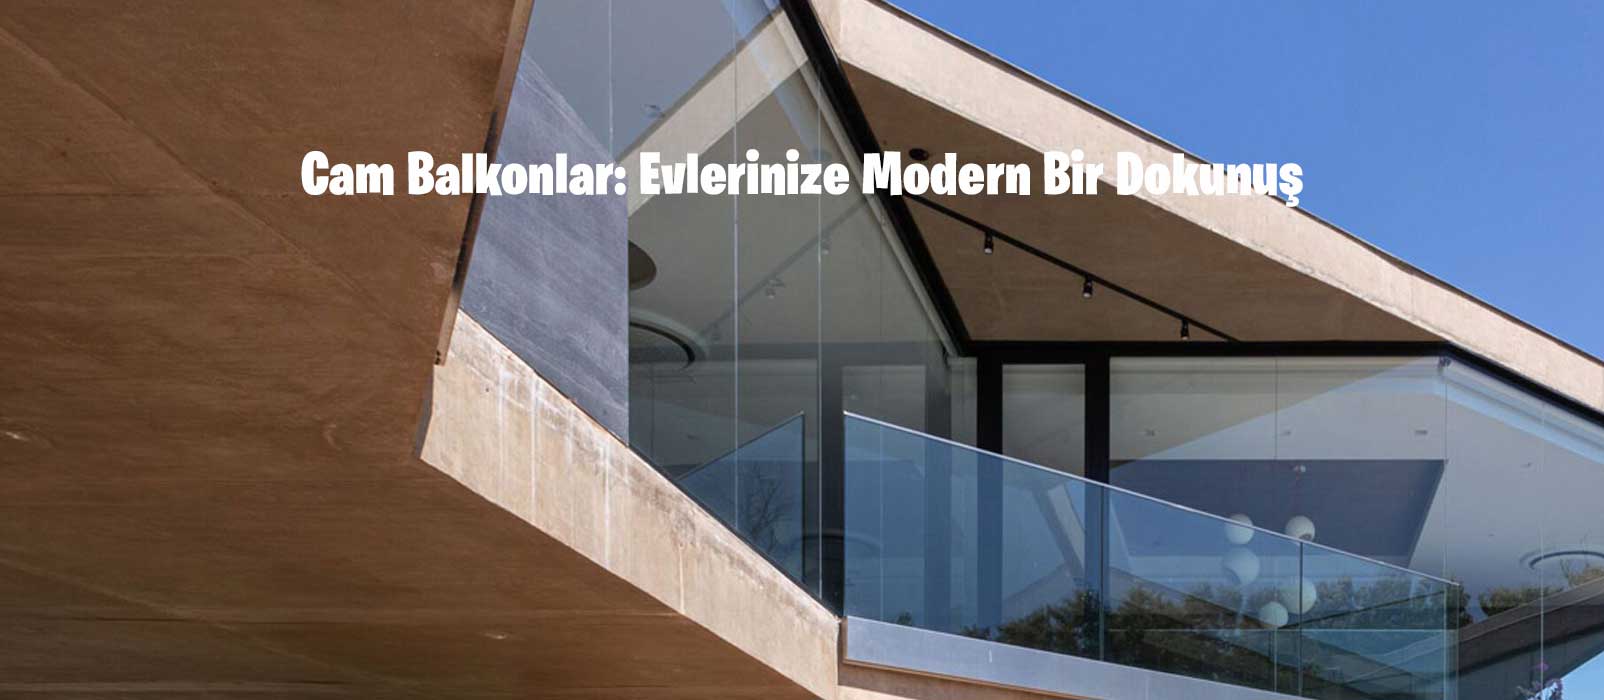 Cam Balkonlar: Evlerinize Modern Bir Dokunuş